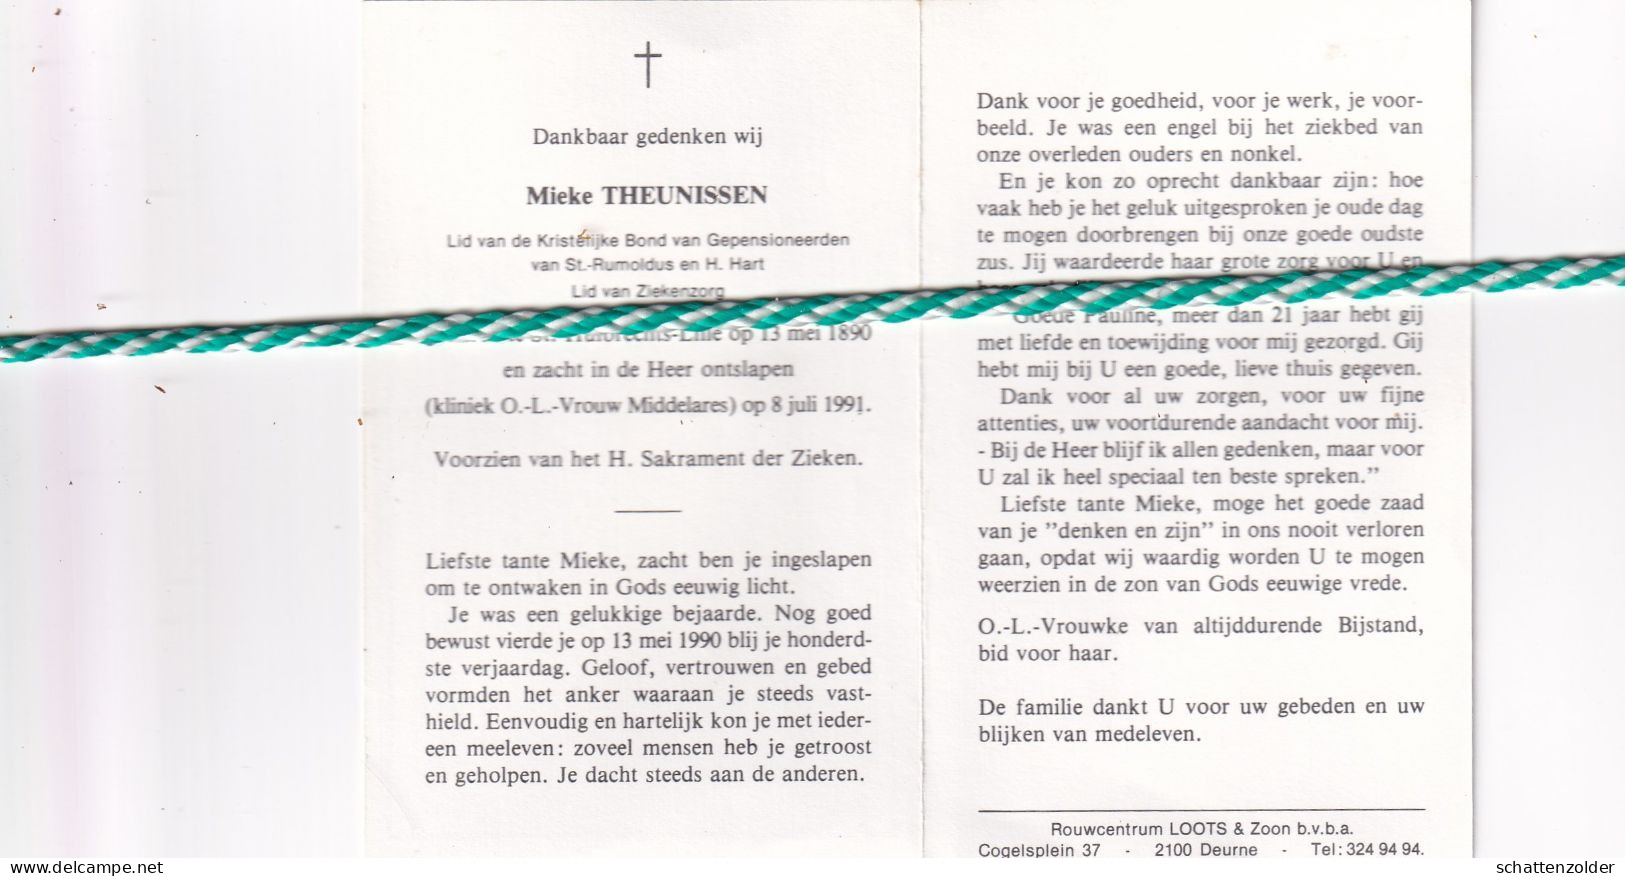 Mieke Theunissen, Sint-Huibrechts-Lille 1890, 1991. Honderdjarige - Todesanzeige